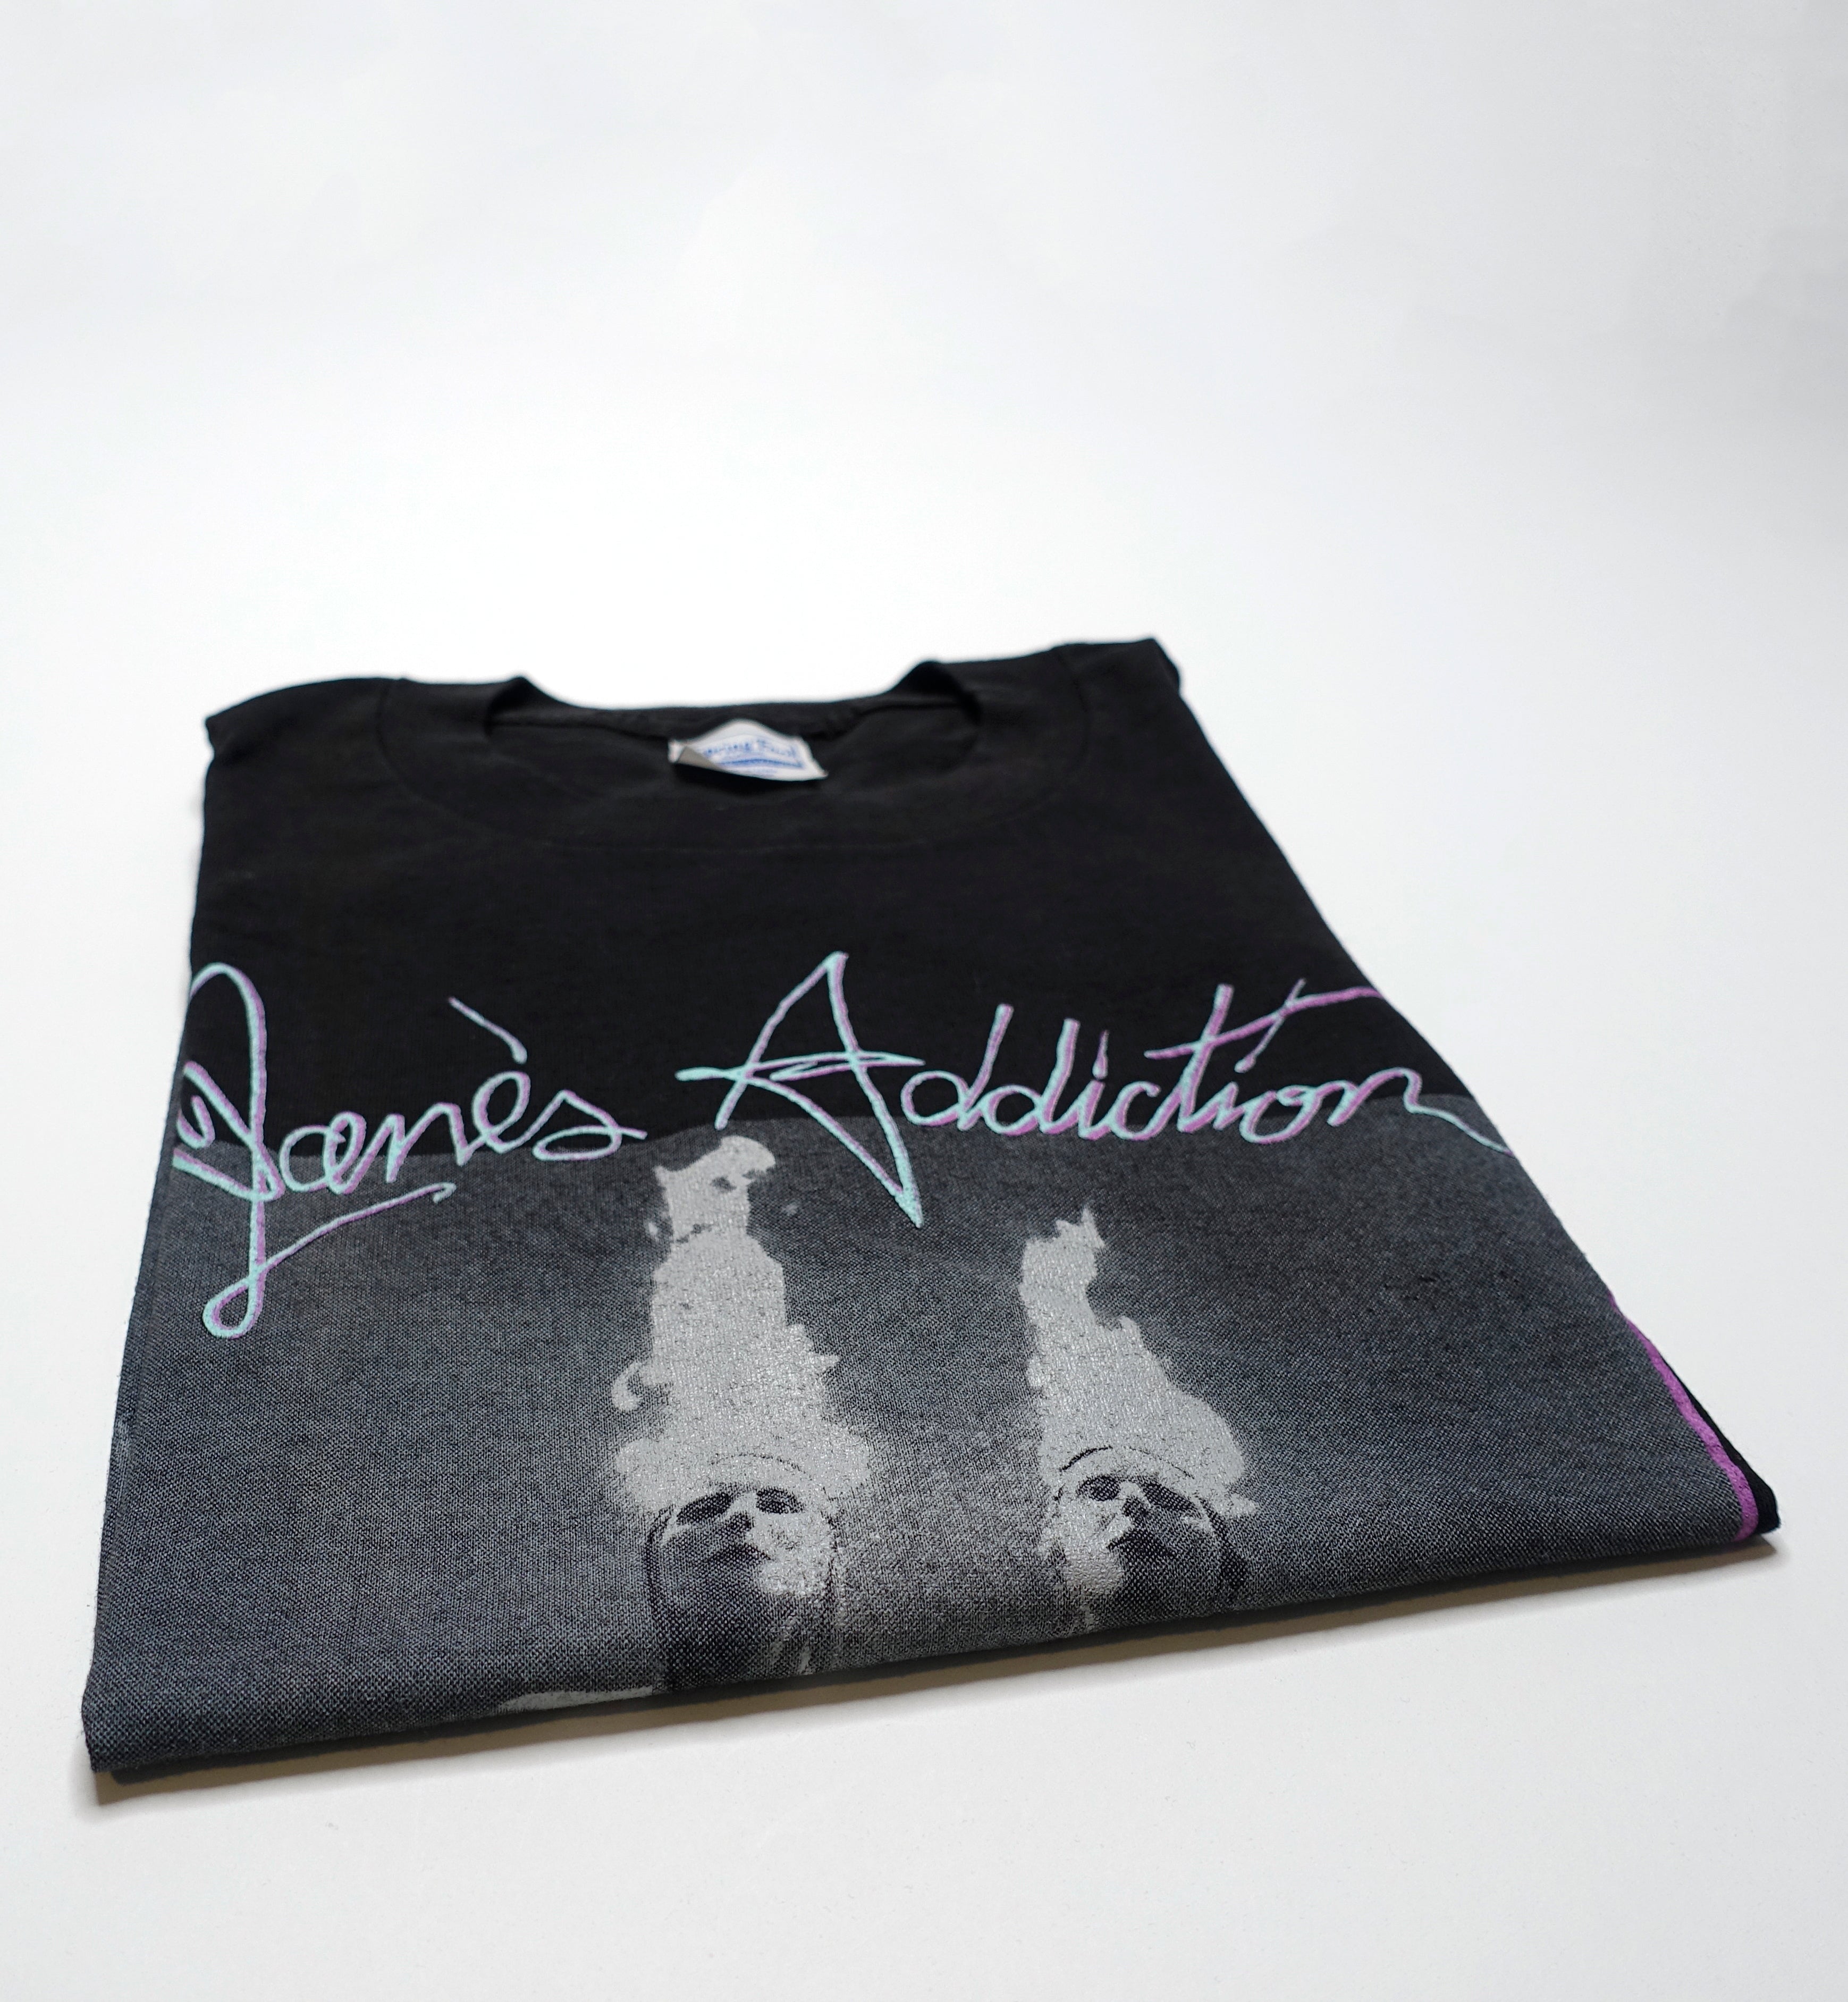 Jane's Addiction - Nothing's Shocking 1998 Tour Shirt Size XL / Large